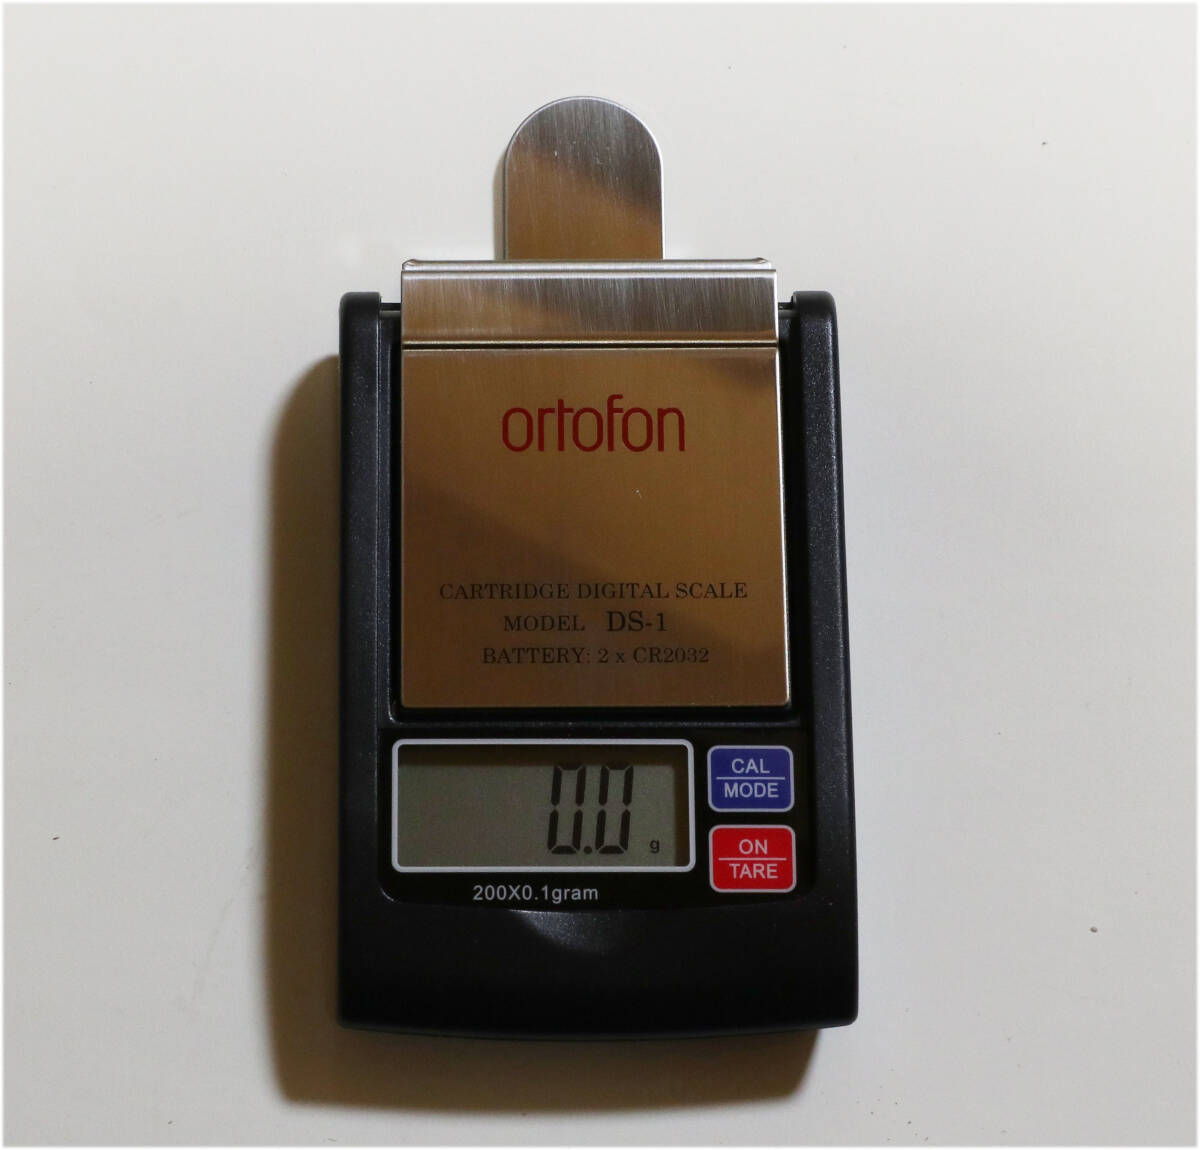 オルトフォン ortofon DS-1 精密小型デジタル針圧計_画像1